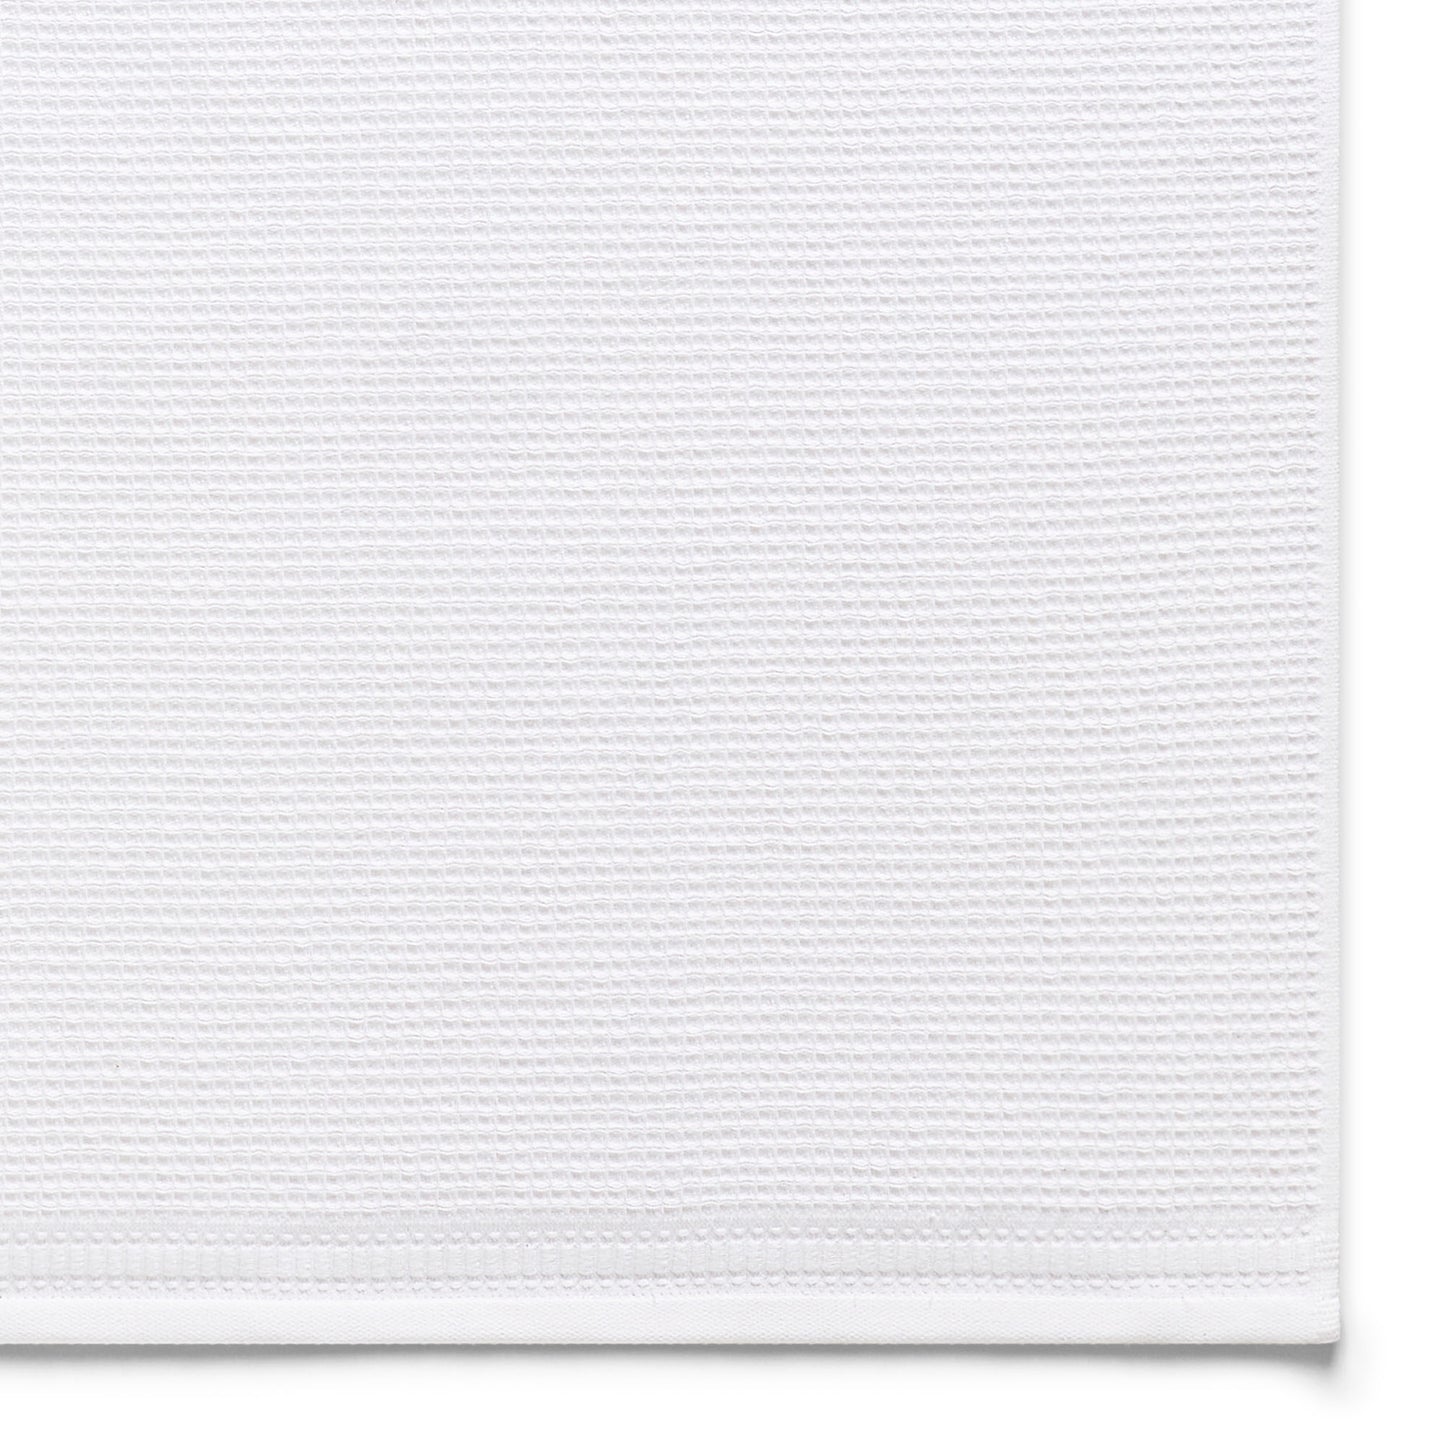 Oceana 6-Piece Towel Set: The Natural Basic